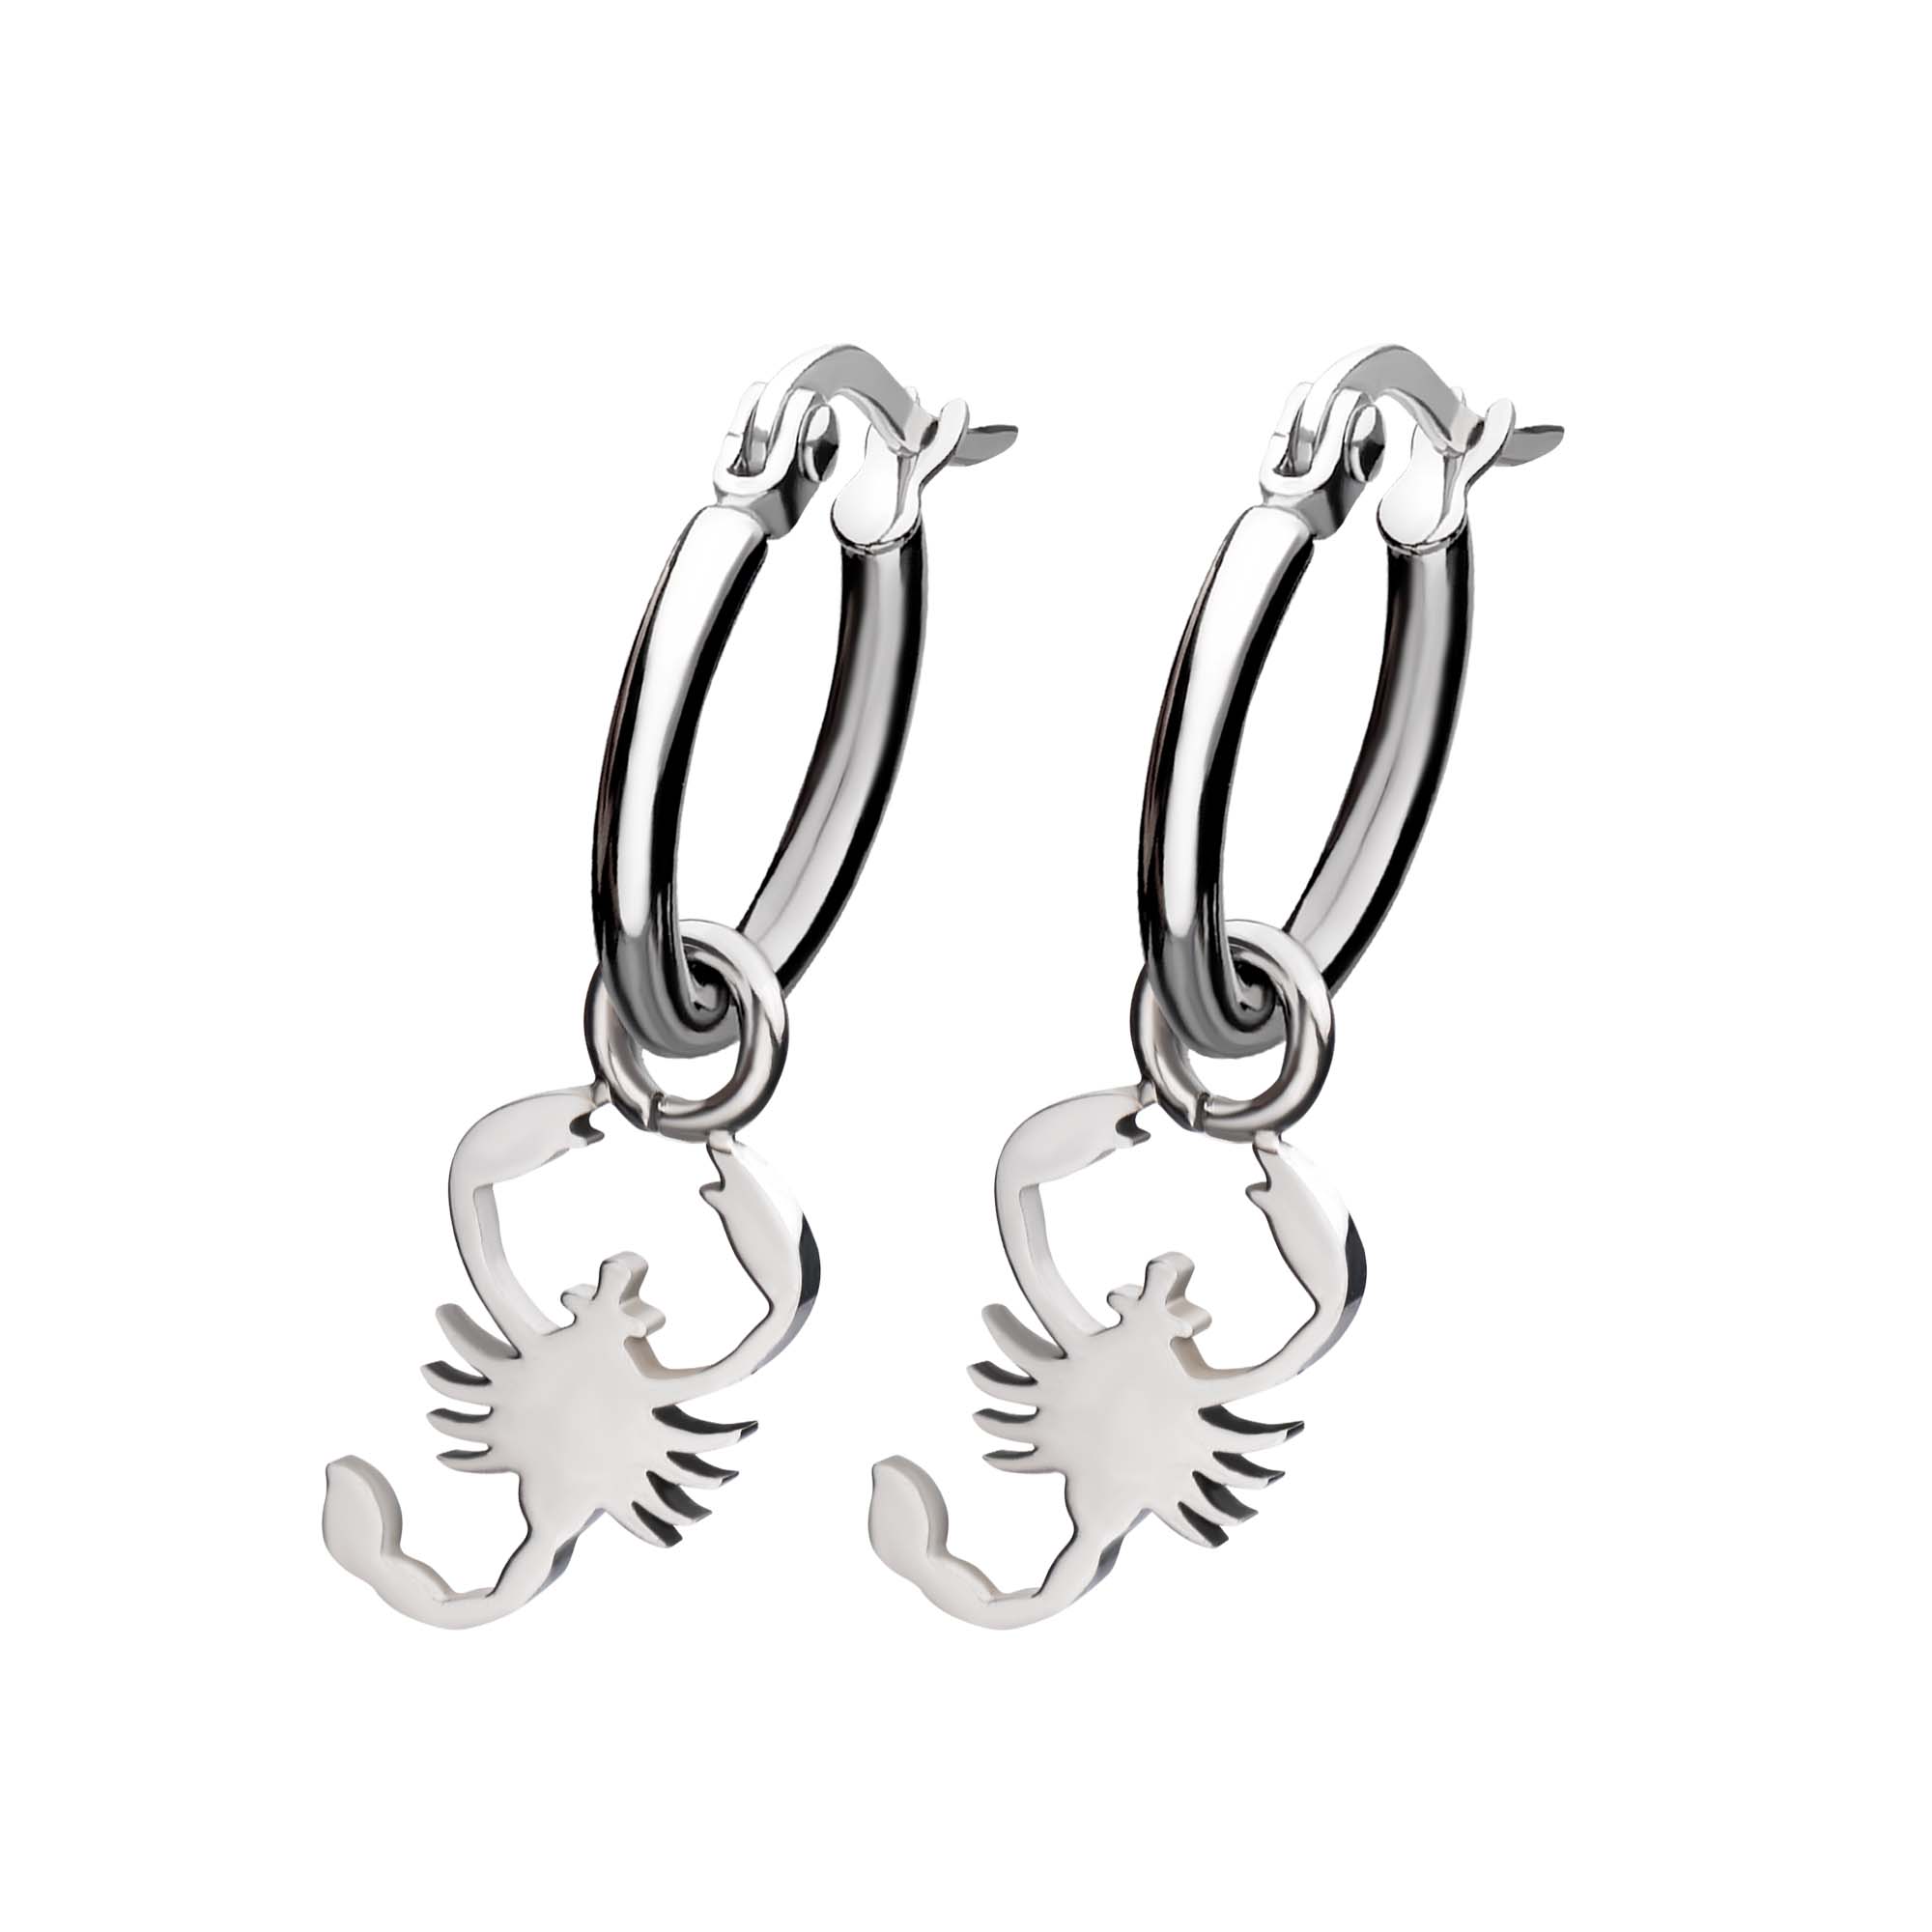 Stainless Steel Hoop Earrings with Scorpio Charm Image 2 Milano Jewelers Pembroke Pines, FL